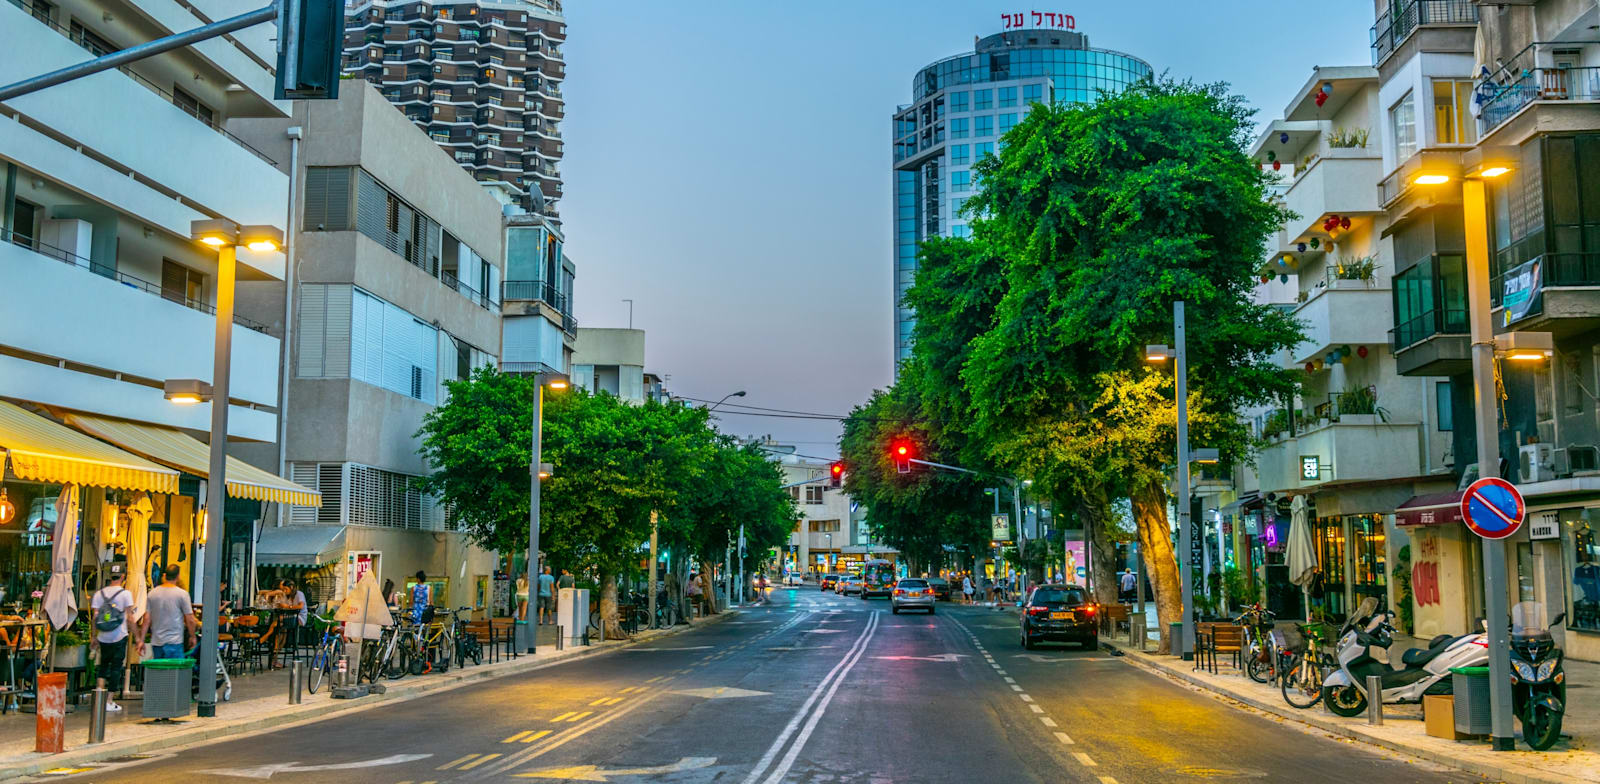 רחוב דיזנגוף בתל אביב / צילום: Shutterstock